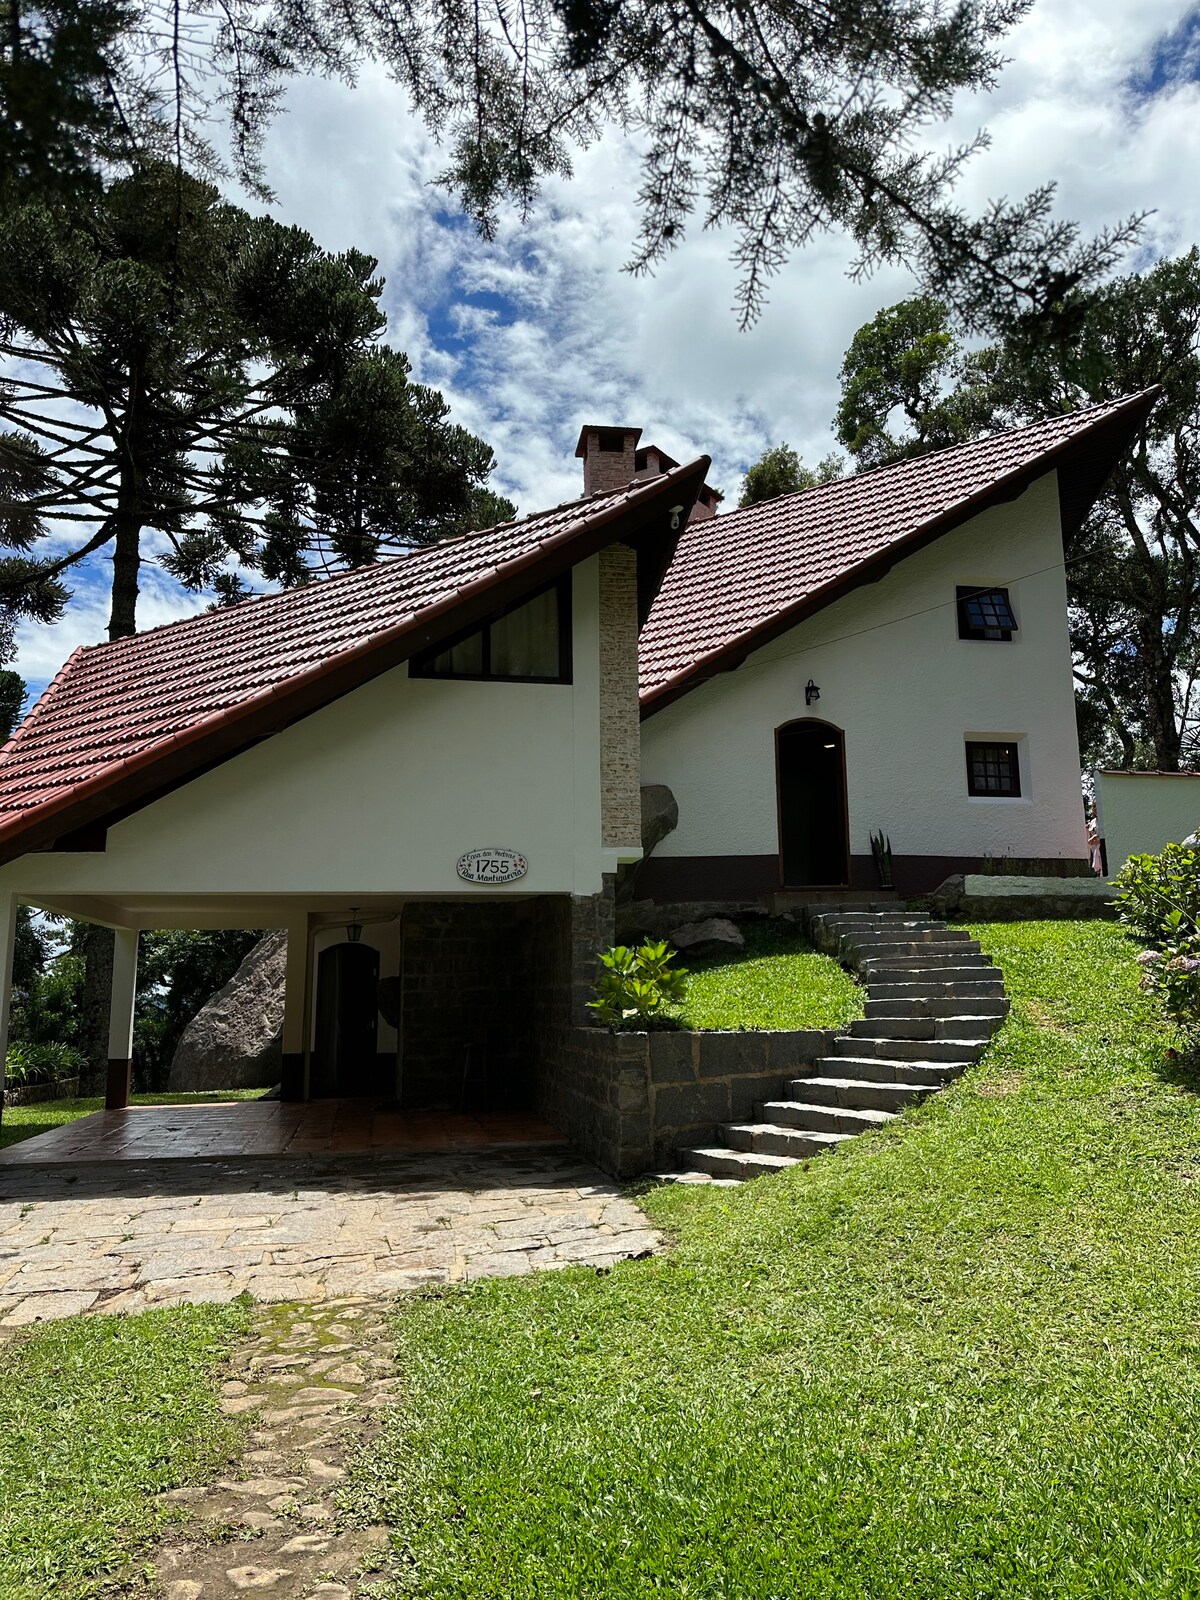 蒙特维德的Casa das Pedras